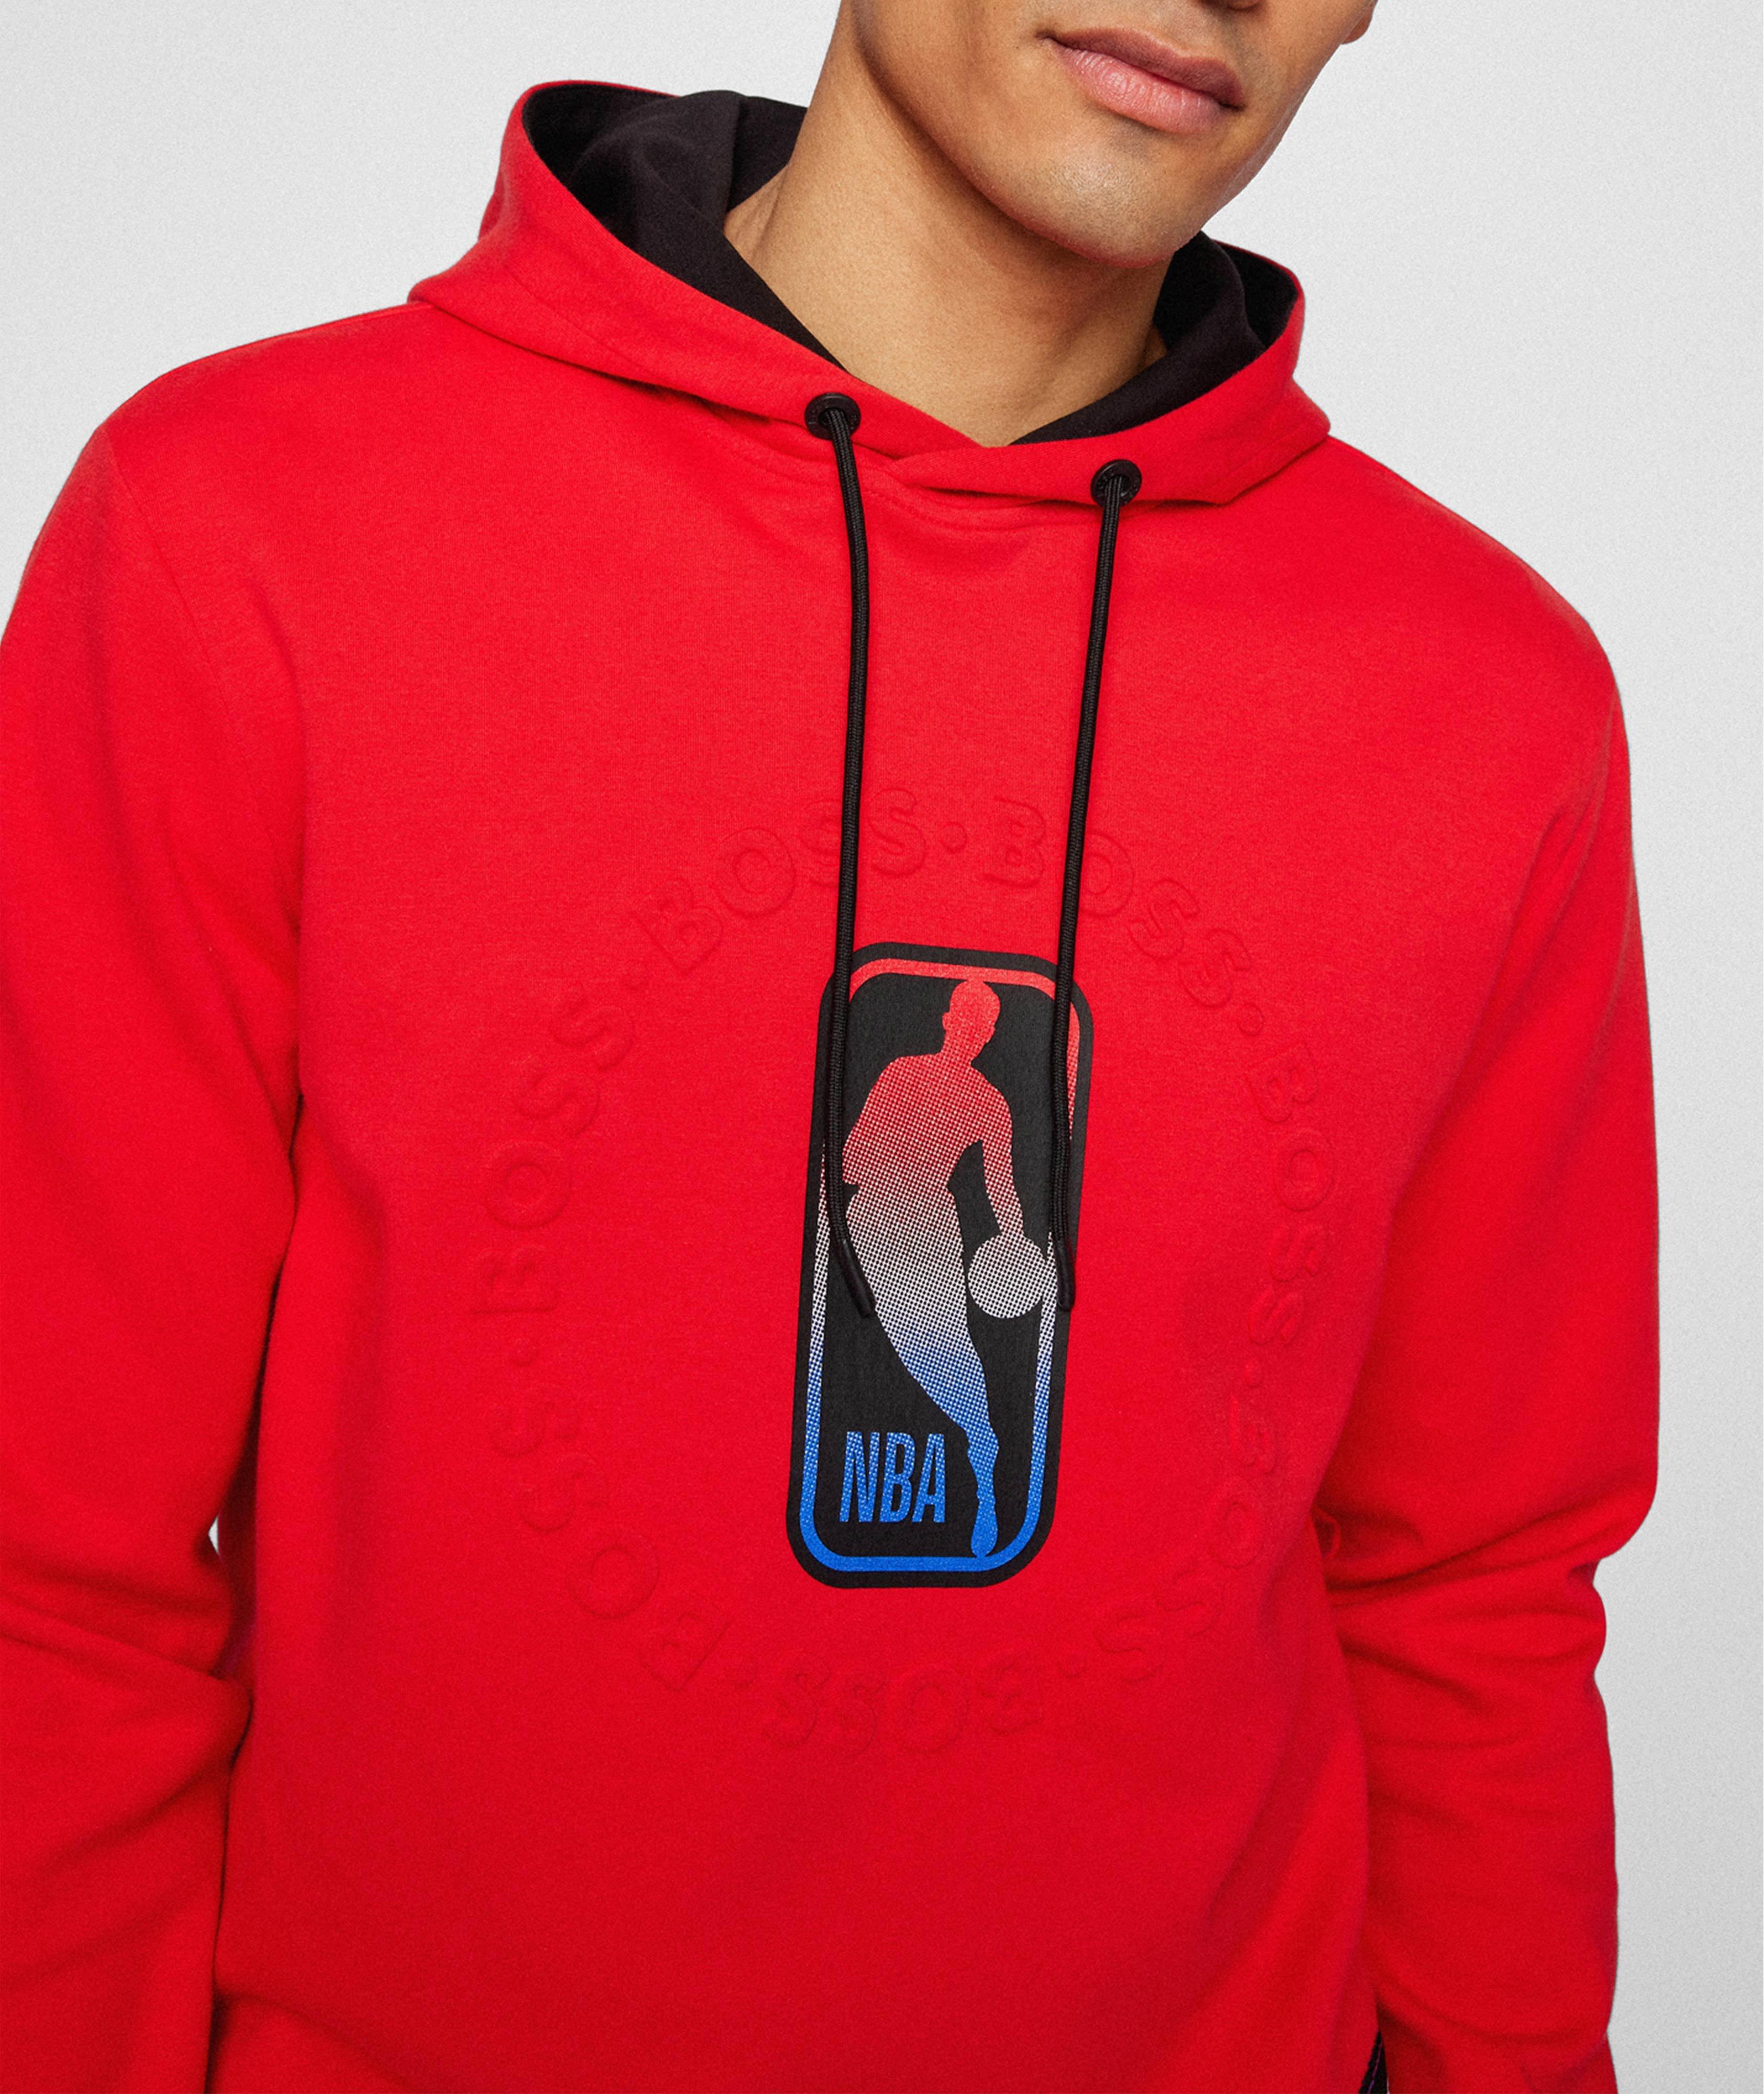 Kangourou avec logos, collection NBA image 3